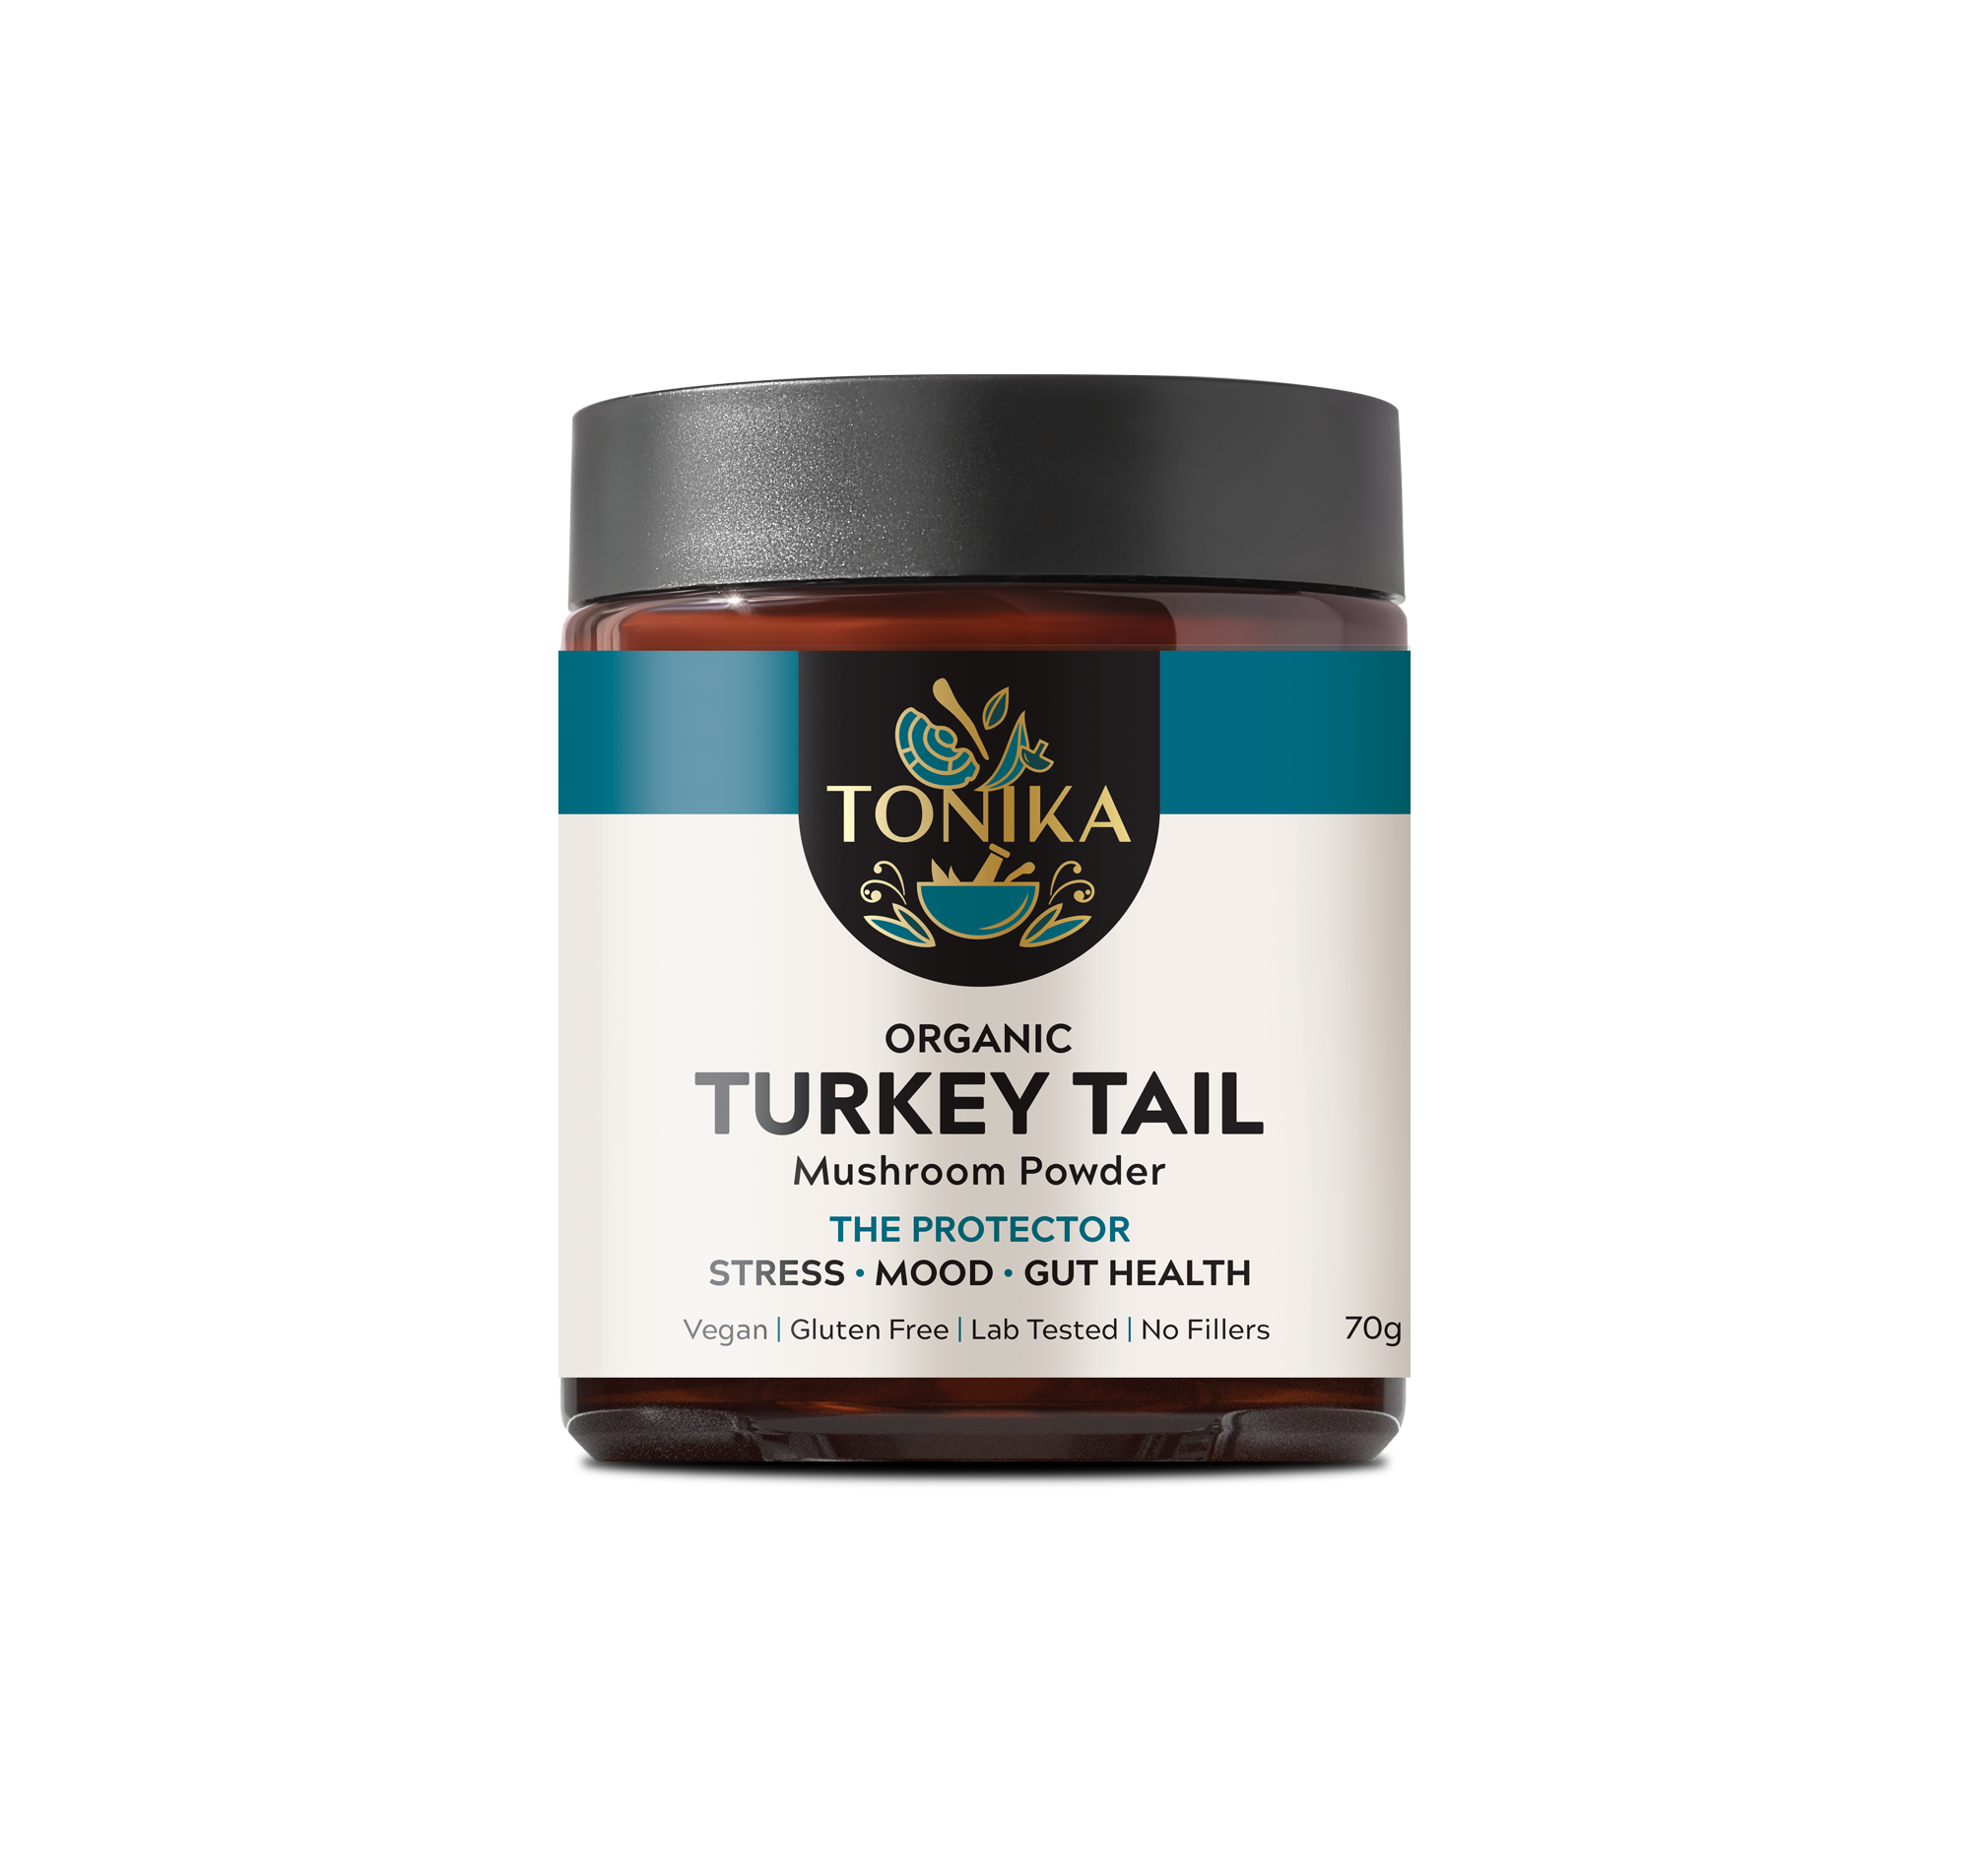 Organic Turkey Tail Mushroom Powder Glass Jar - THE PROTECTOR